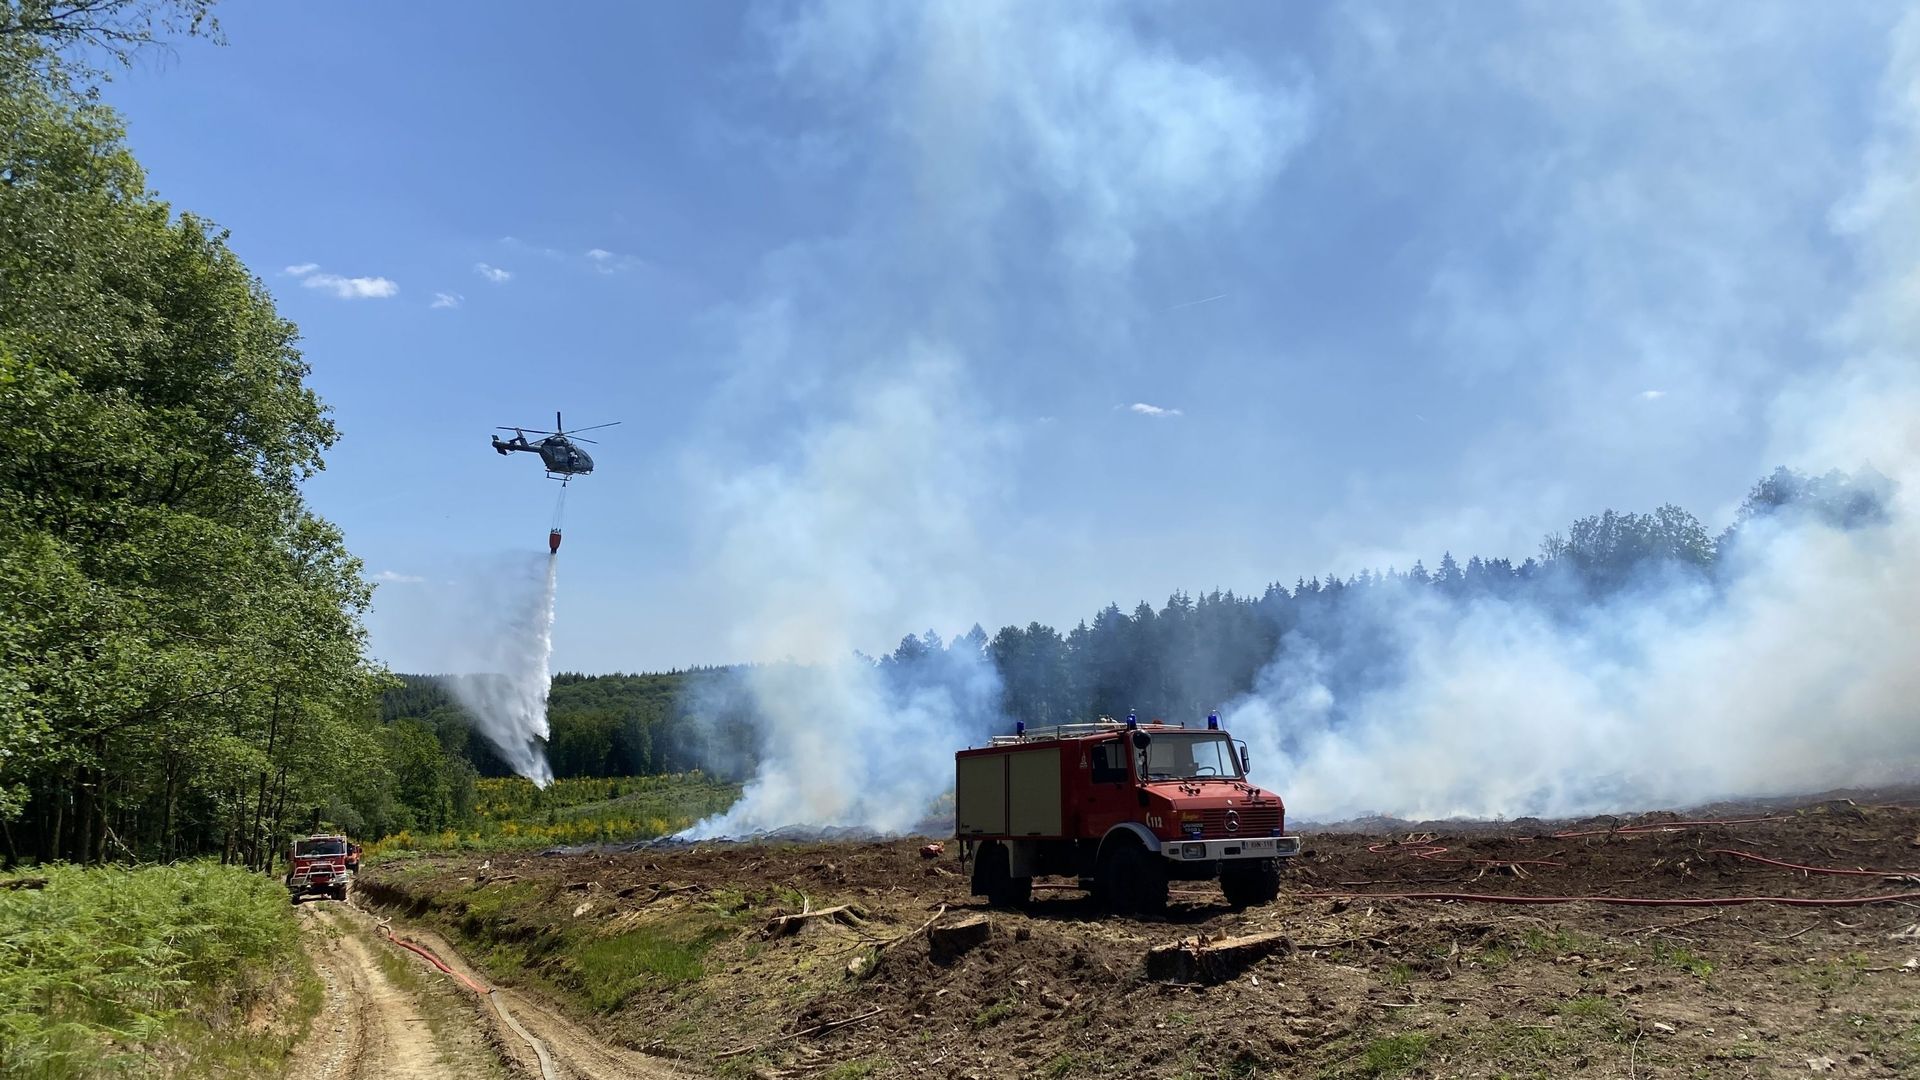 Exercice de grande ampleur de lutte contre les feux de forêts à Vresse, un hélicoptère de la police fédérale largue de l’eau sur l’incendie.